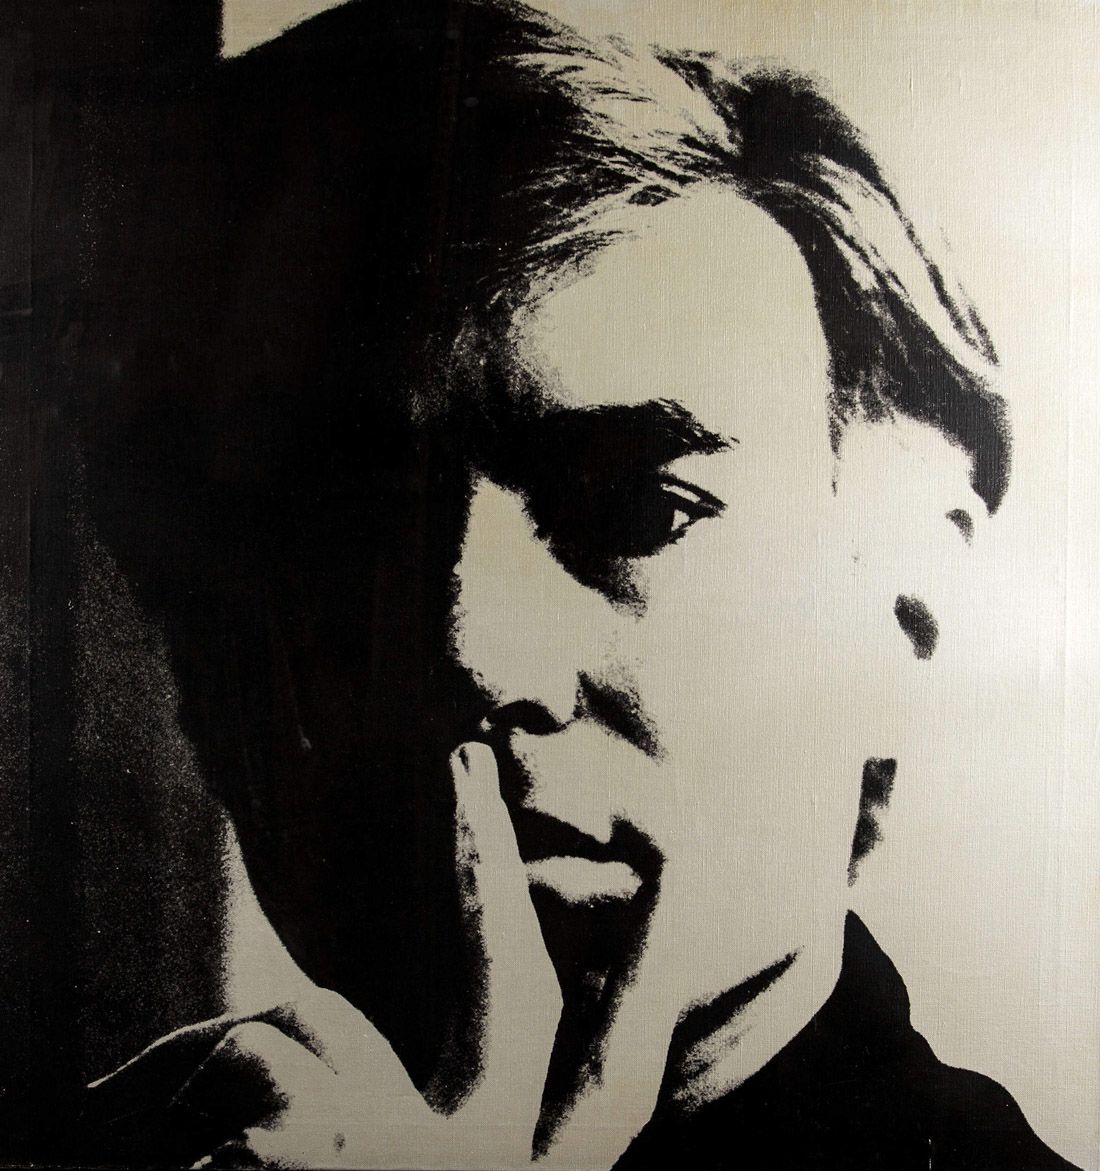 Perché siamo ossessionati da Andy Warhol? A Milano la mostra imperdibile sul protagonista della Pop art americana- immagine 6